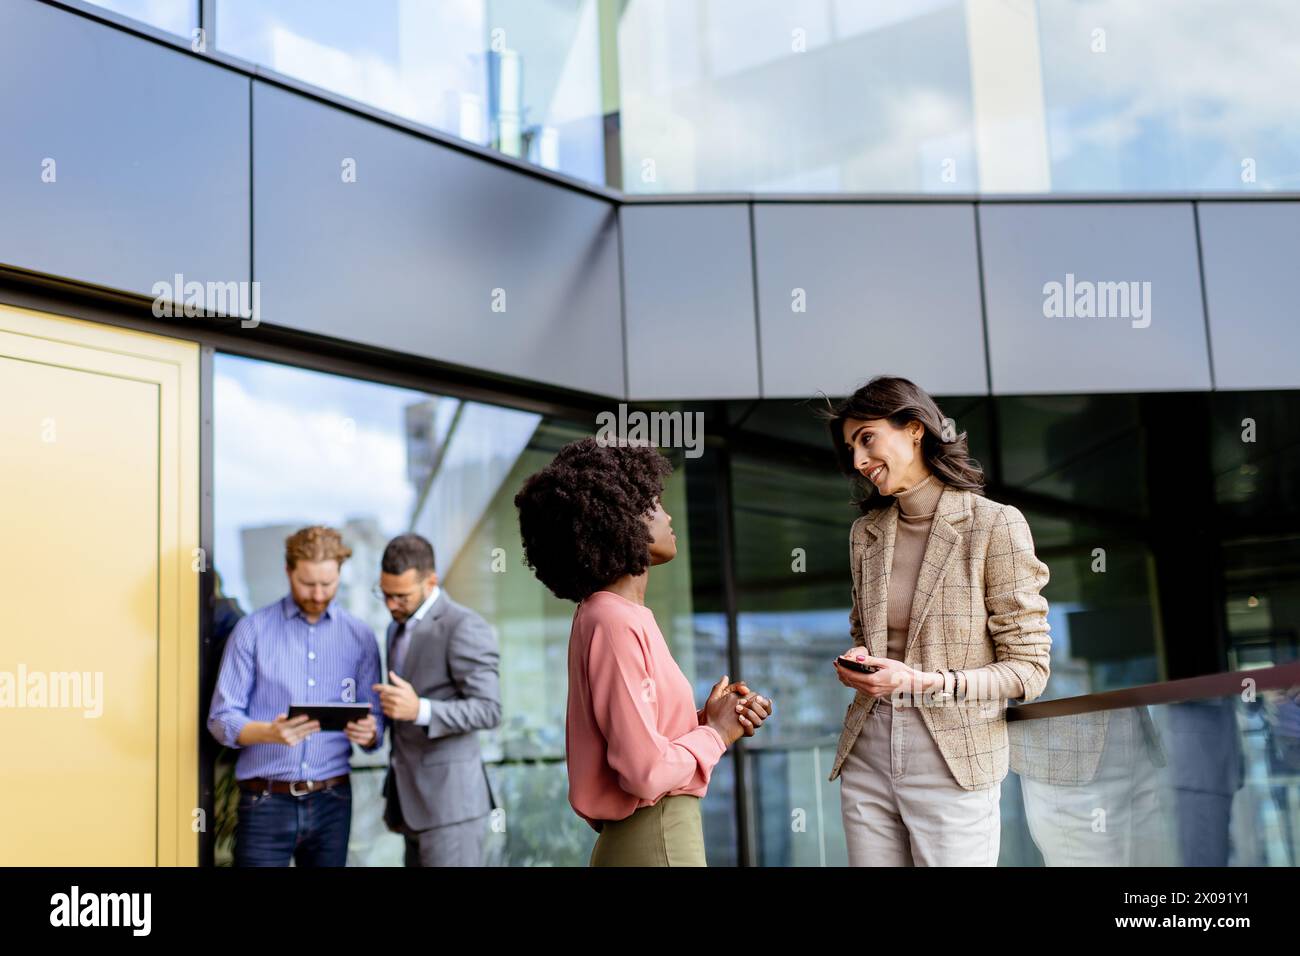 Zwei weibliche multiethnische Kollegen unterhalten sich vor einem Büro freundlich, während andere im Hintergrund arbeiten Stockfoto